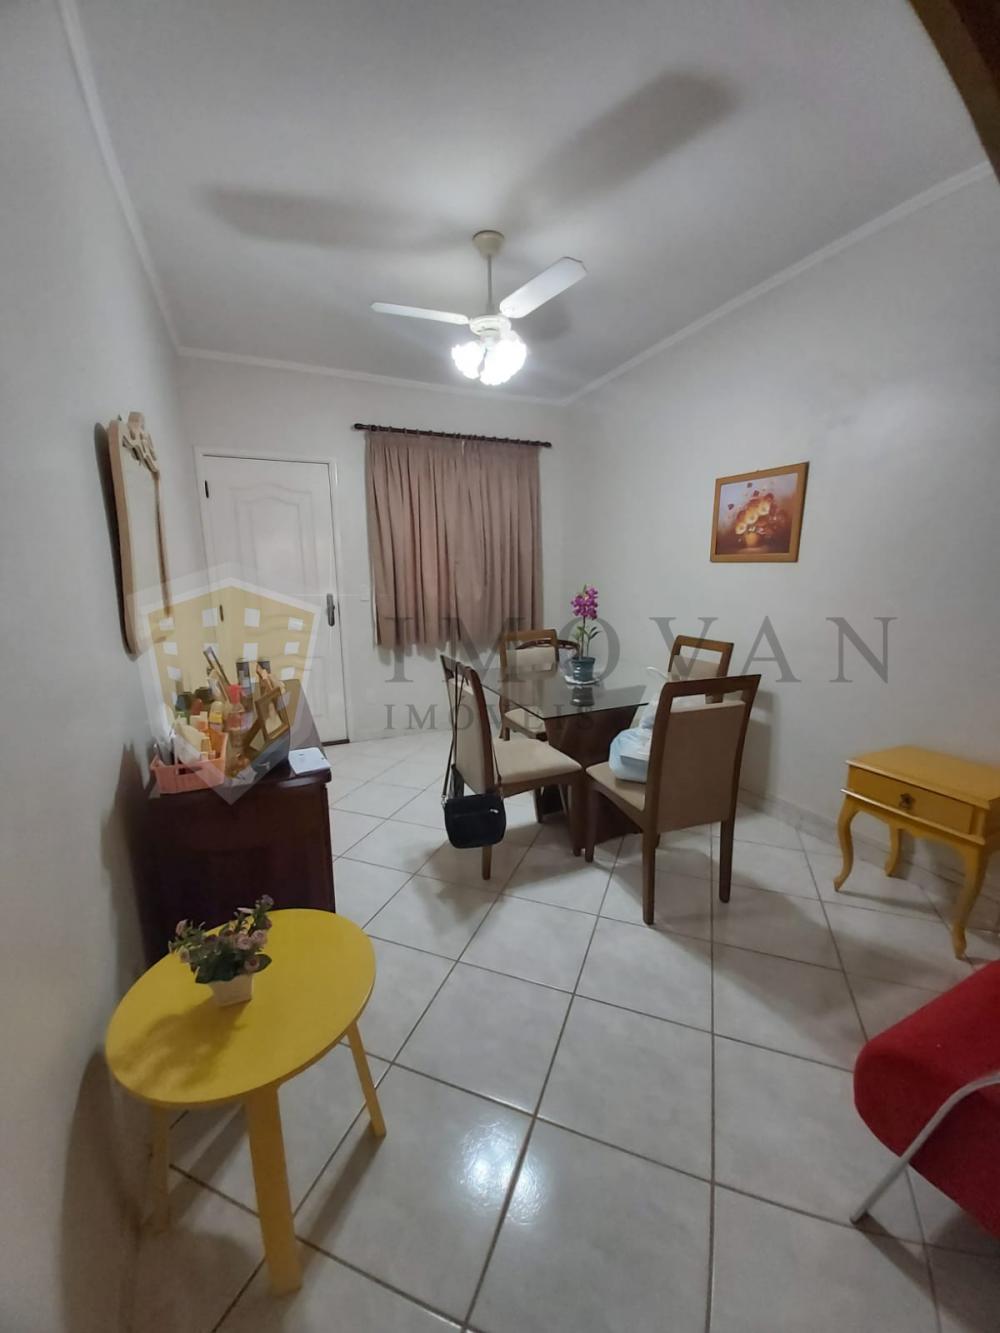 Comprar Casa / Condomínio em Ribeirão Preto R$ 590.000,00 - Foto 2